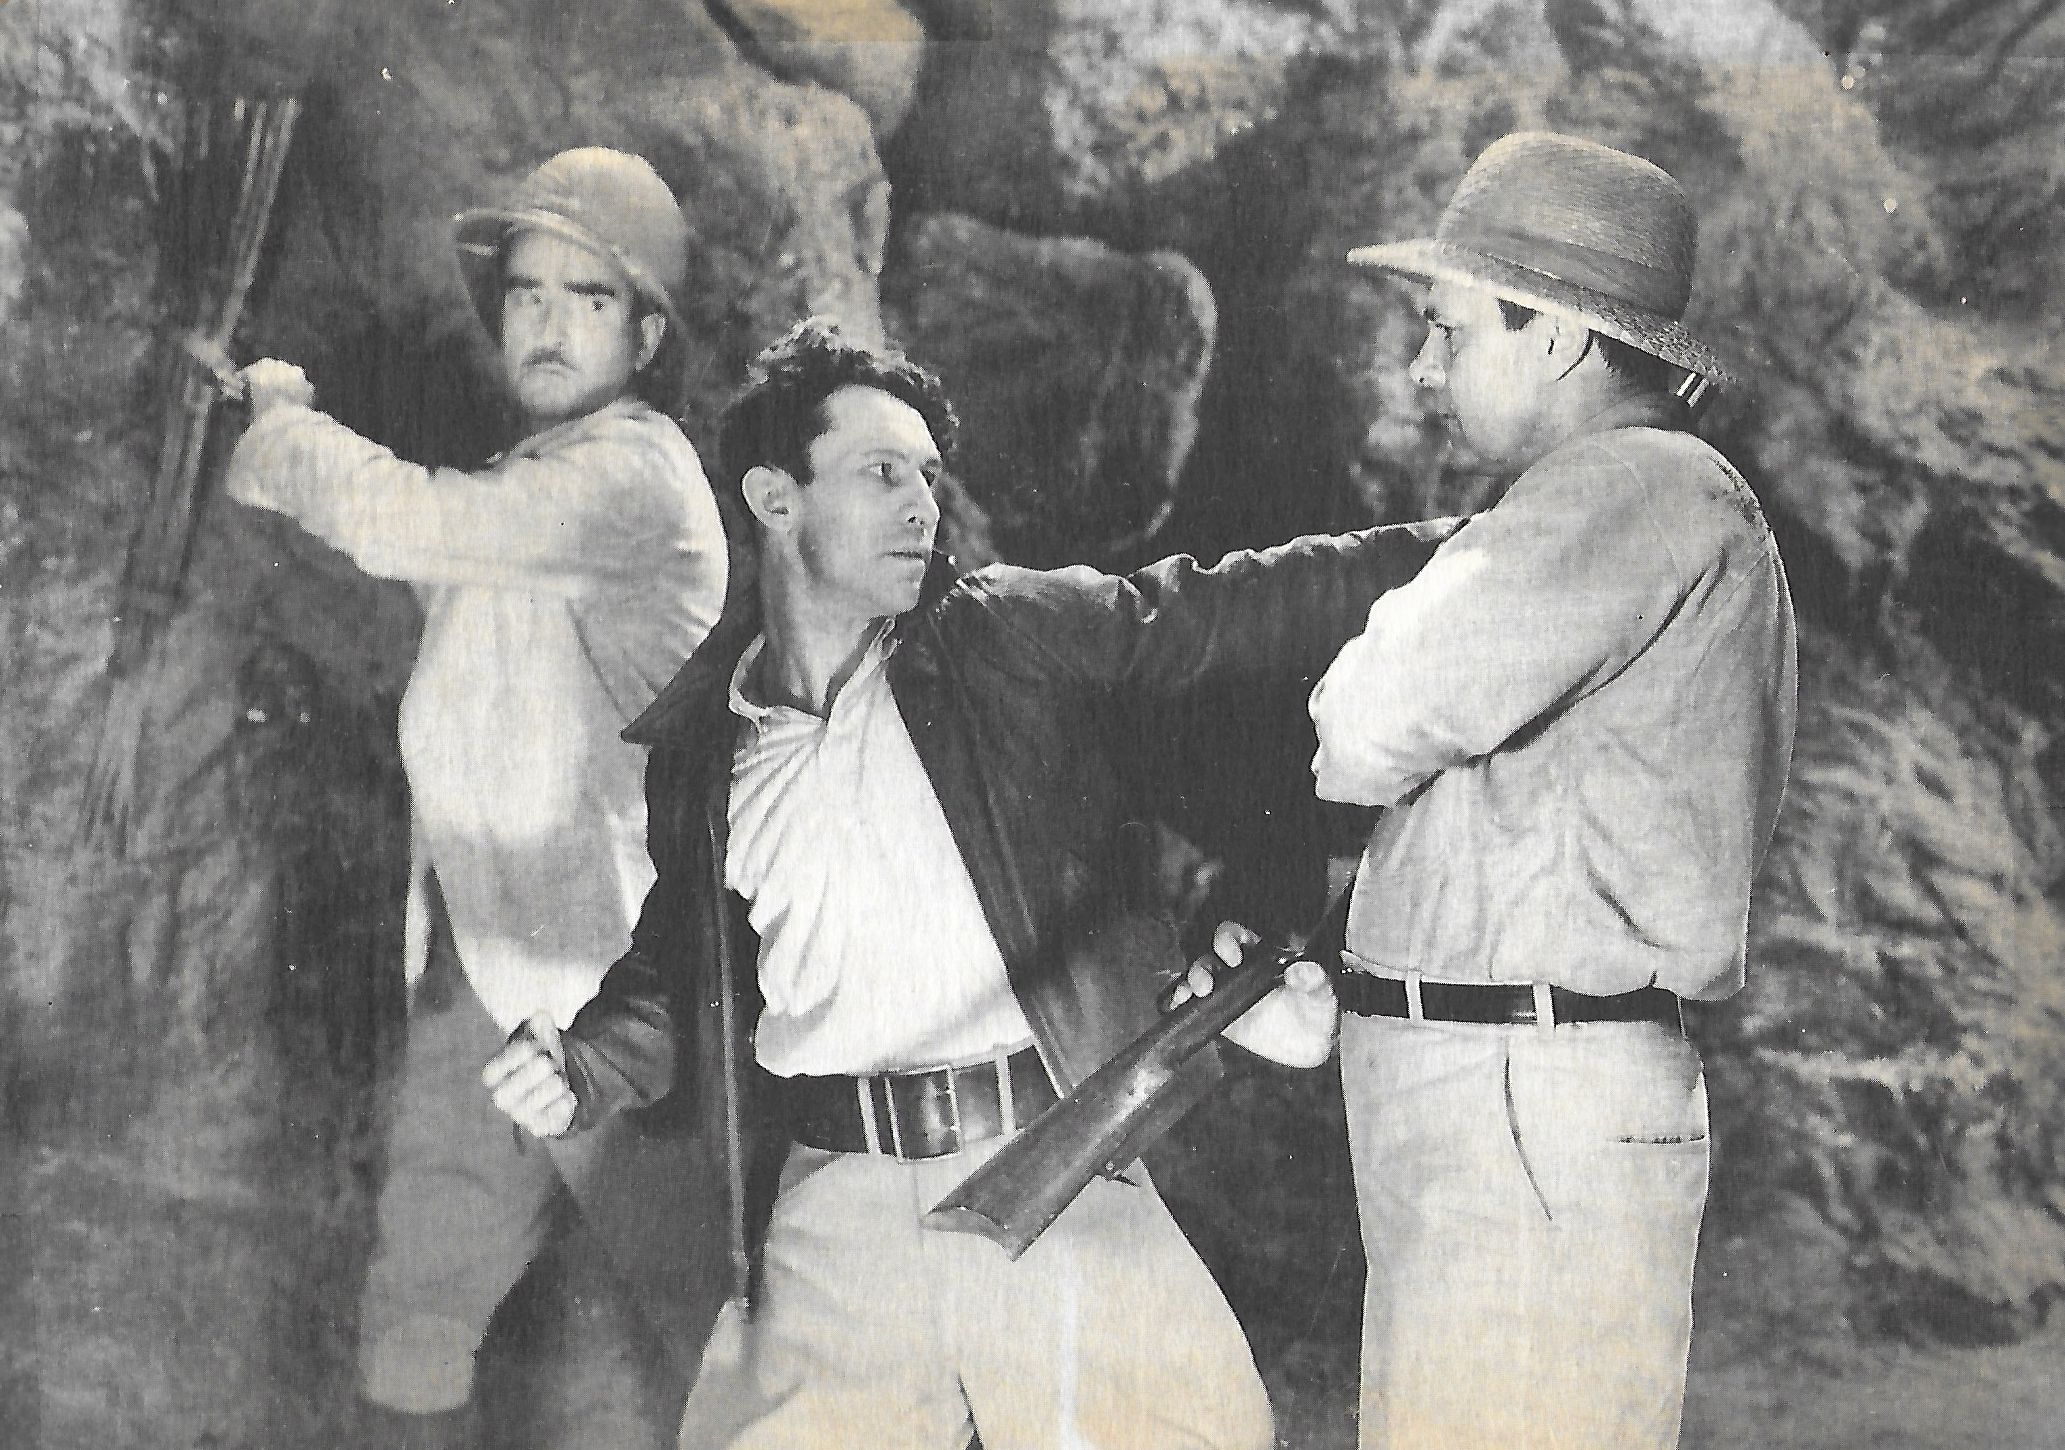 Darkest Africa (1936) Screenshot 3 